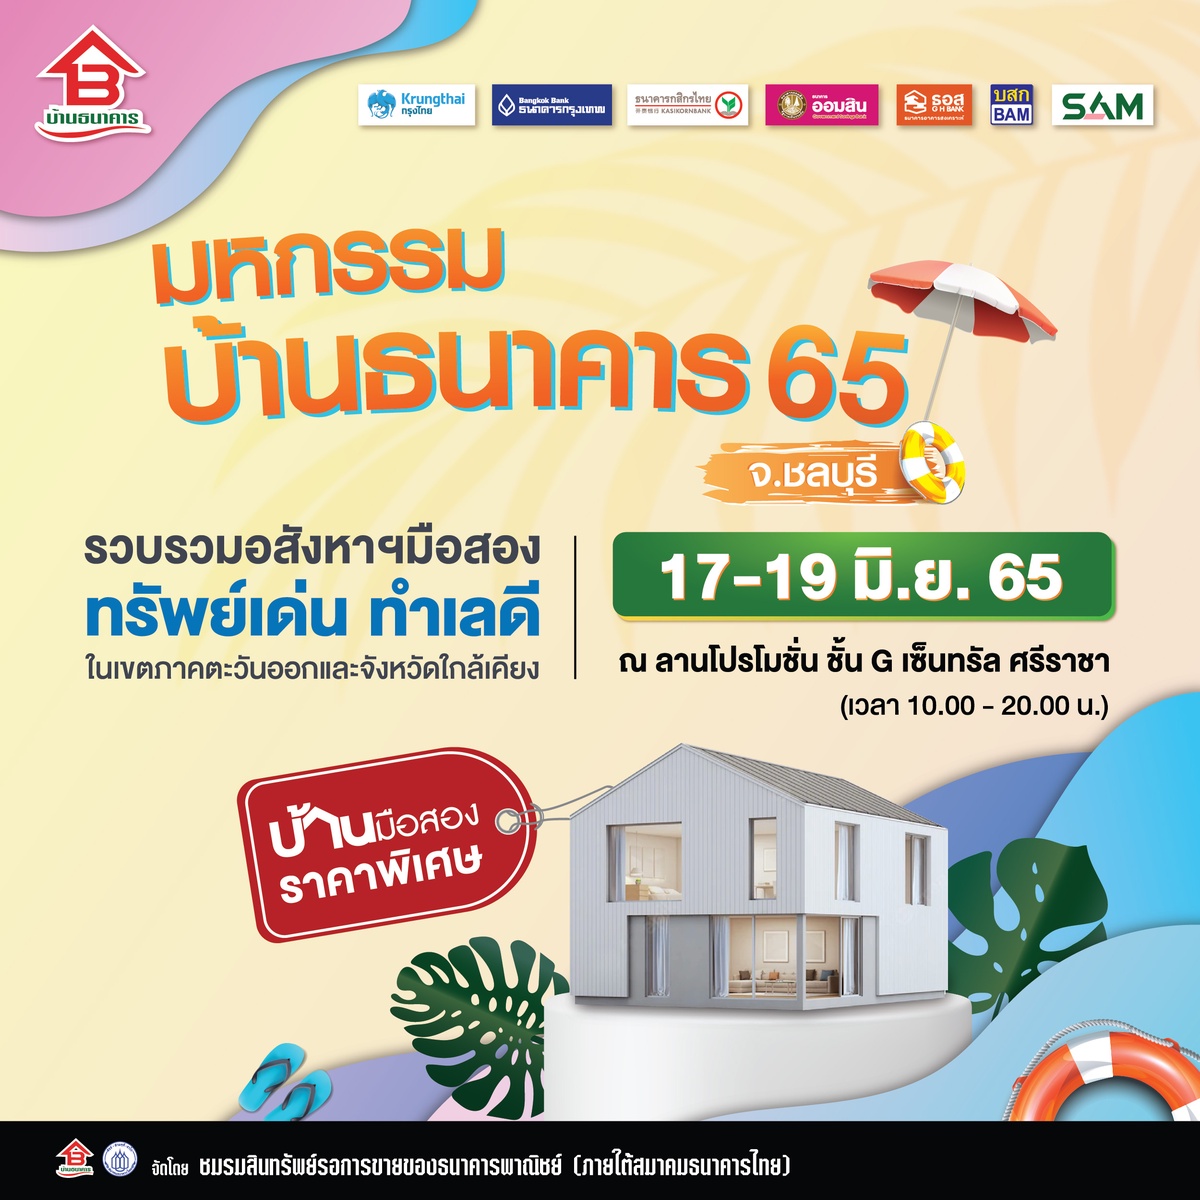 โอกาสของคุณมาถึงแล้ว ชมรมสินทรัพย์รอการขายของธนาคารพาณิชย์ (ภายใต้สมาคมธนาคารไทย) จัดงานมหกรรมบ้านธนาคาร 65